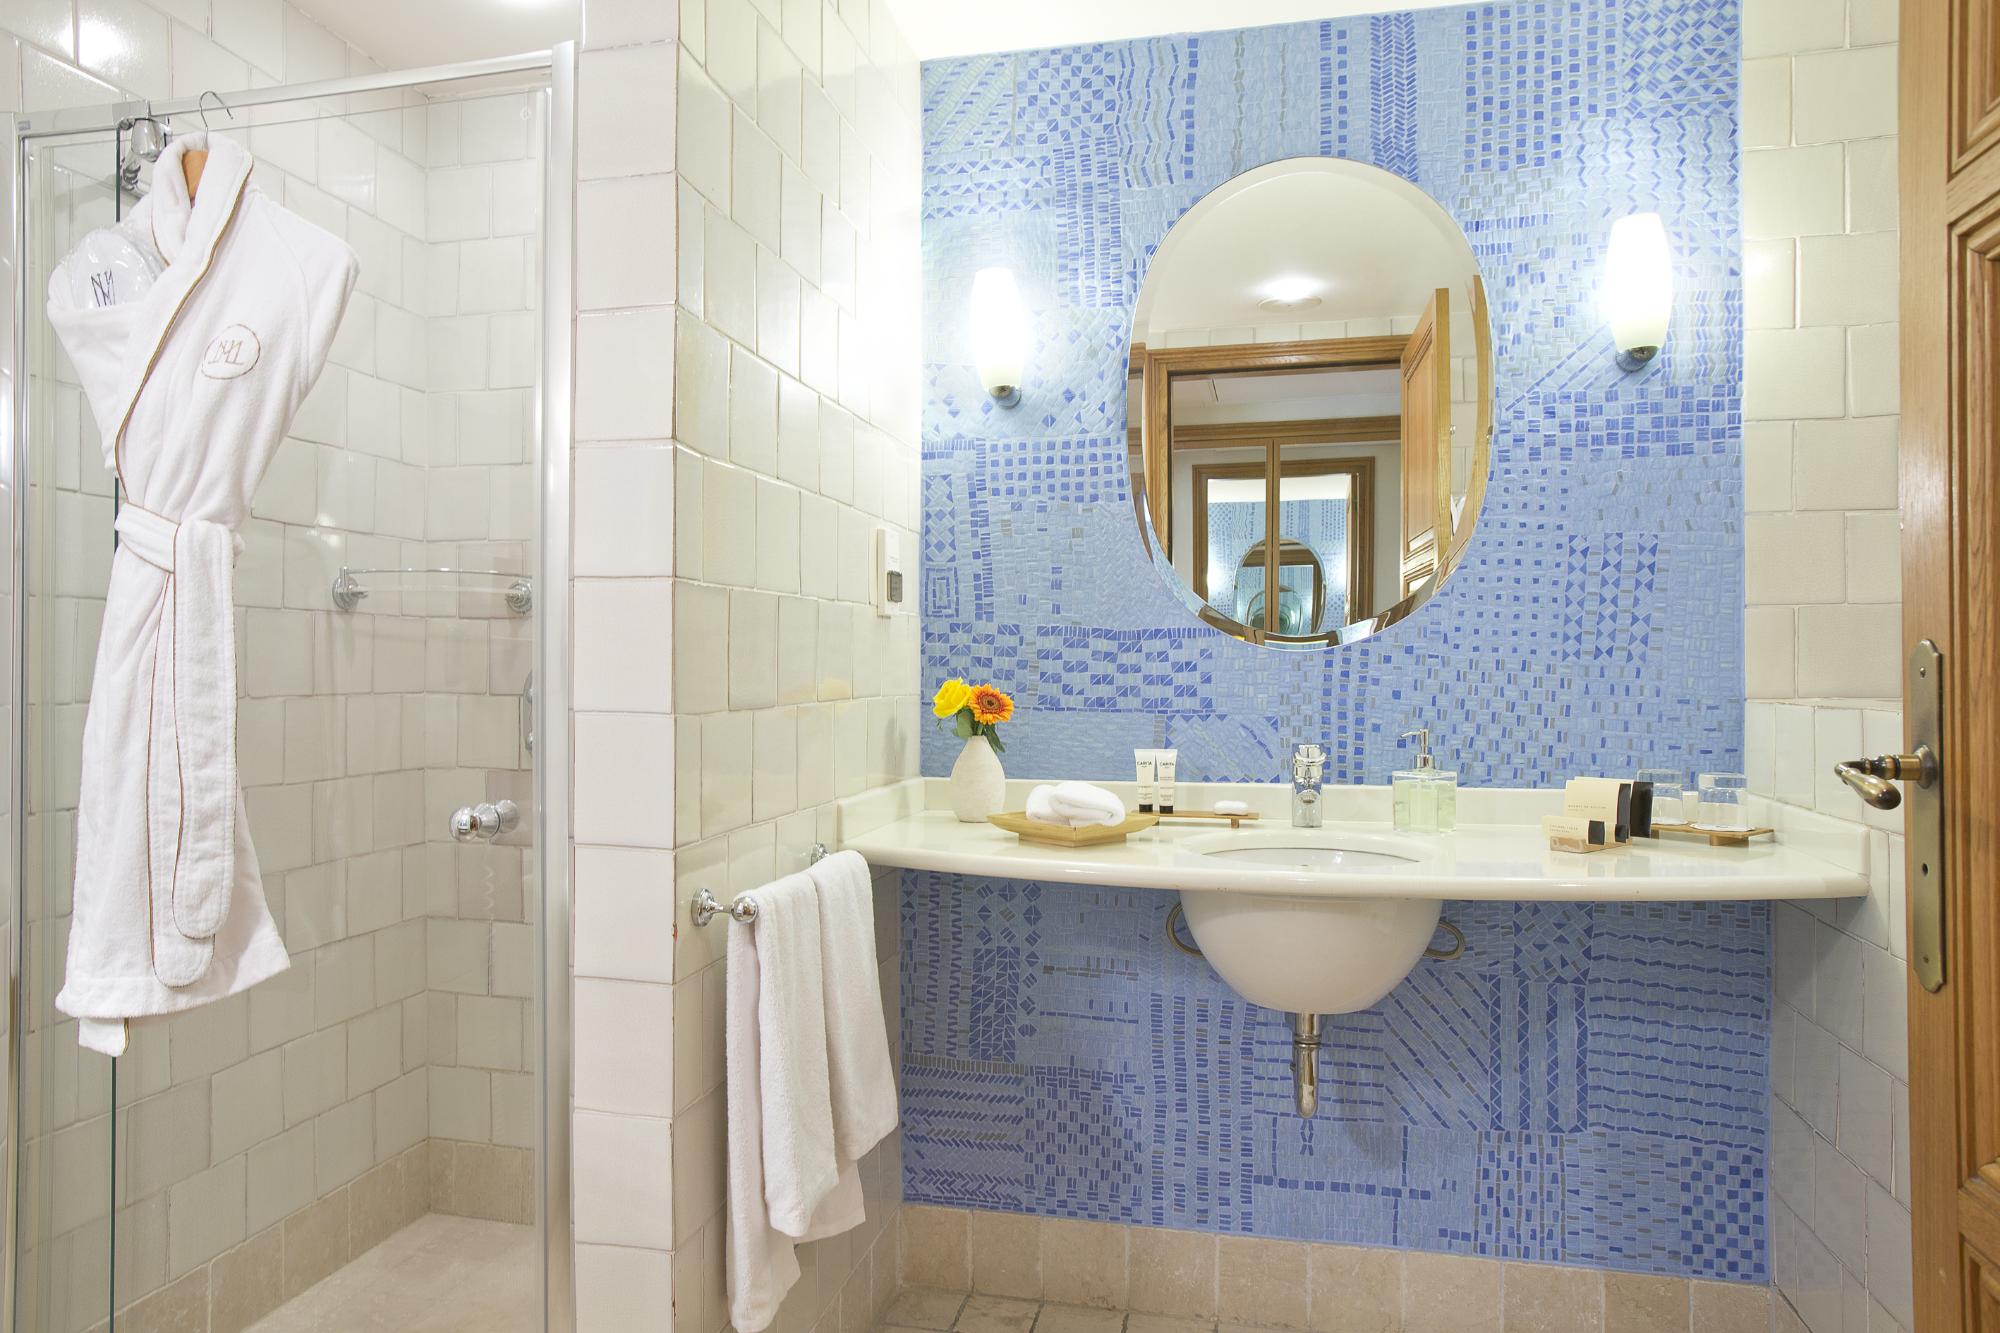 Produits d'accueil de qualité dans nos salles de bains confortables et fonctionnelles